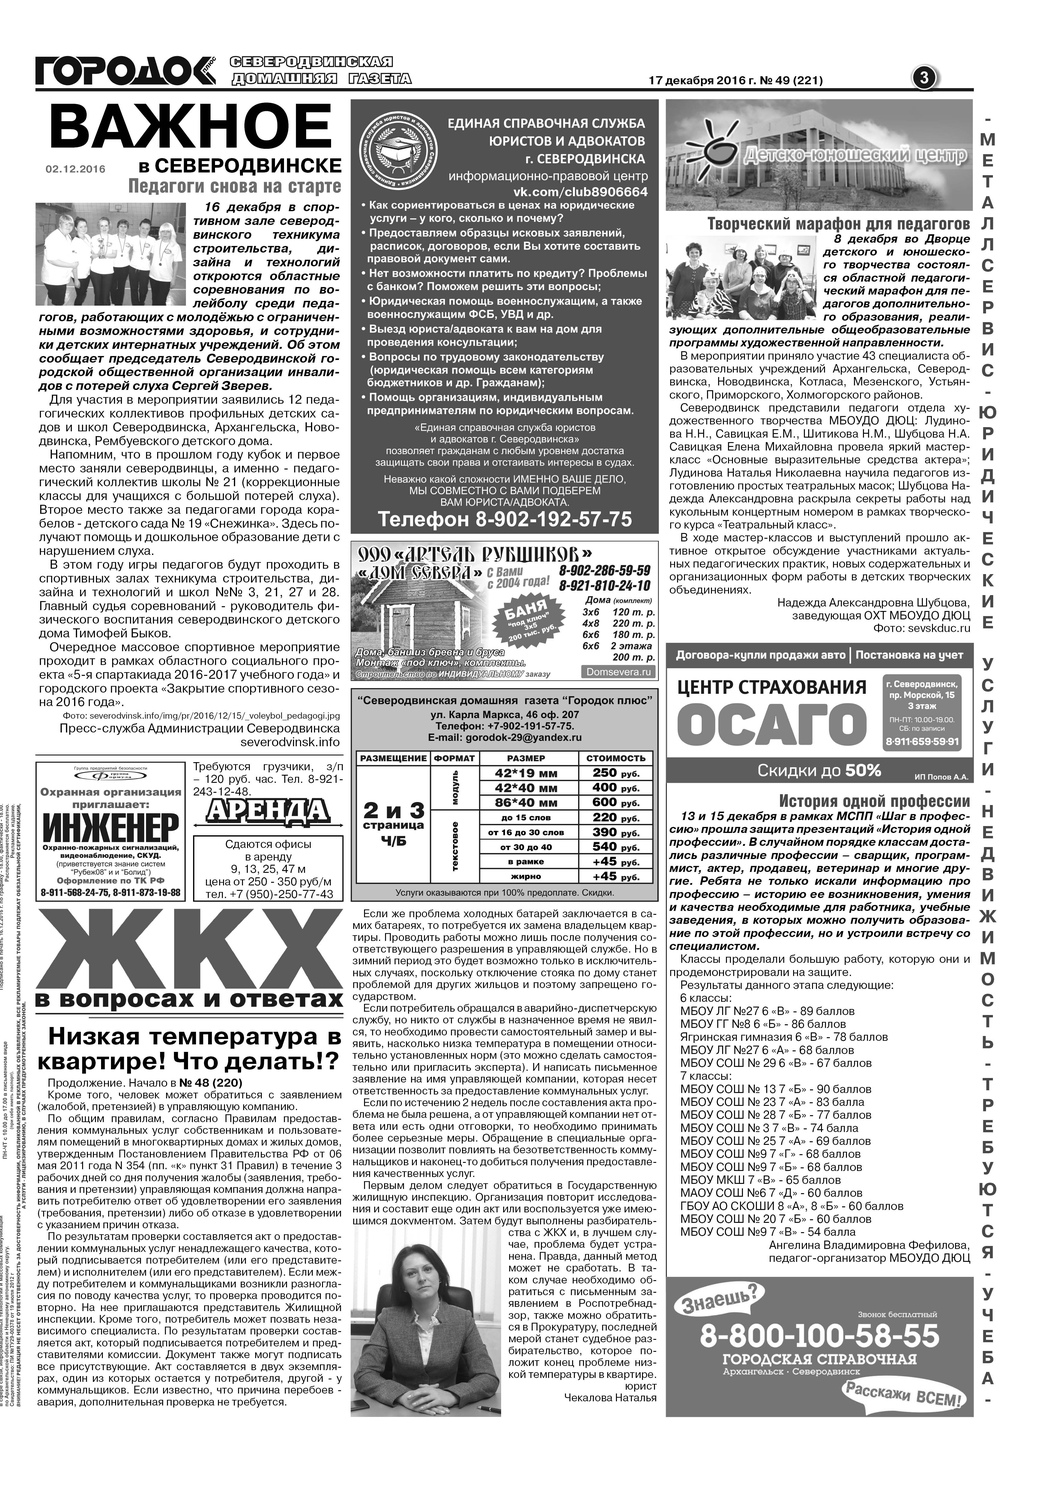 Городок плюс, выпуск номер 49 от 17 декабря 2016 года, страница 3.